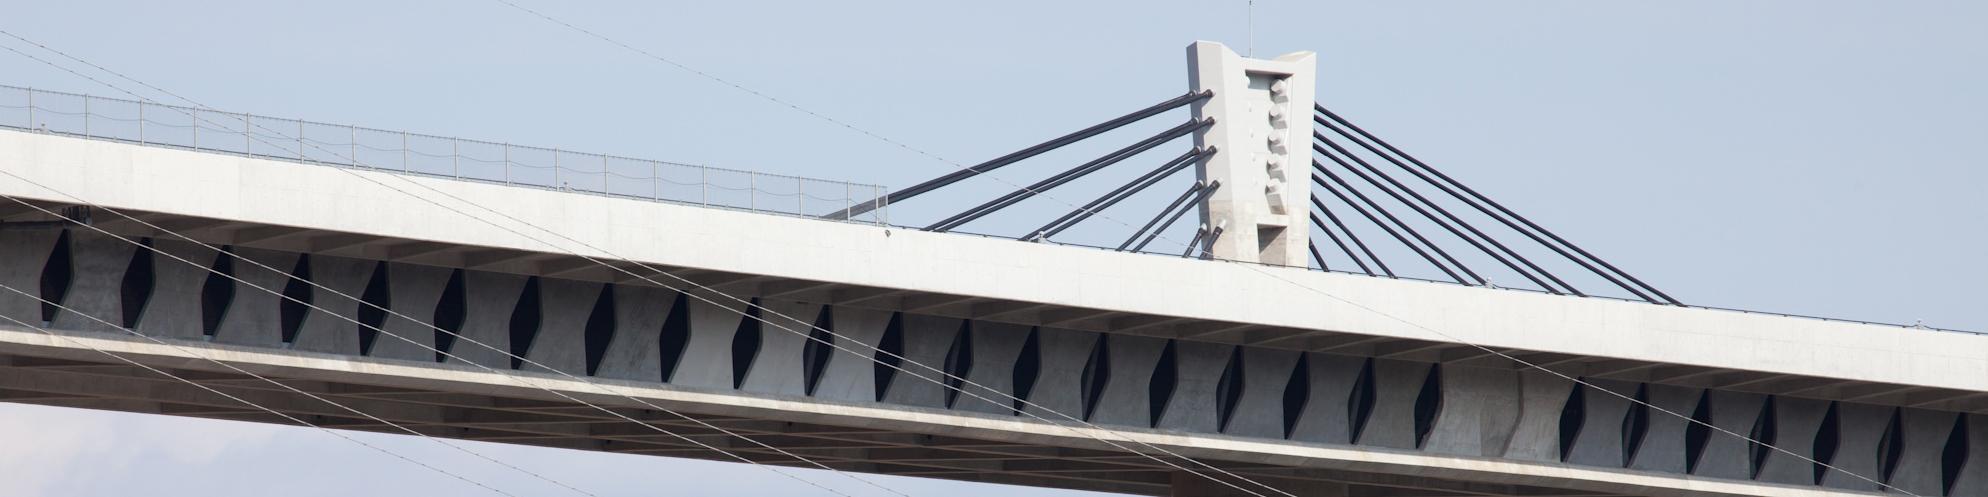 蝶形腹板结构的桥桁和低主塔　（武库川桥）